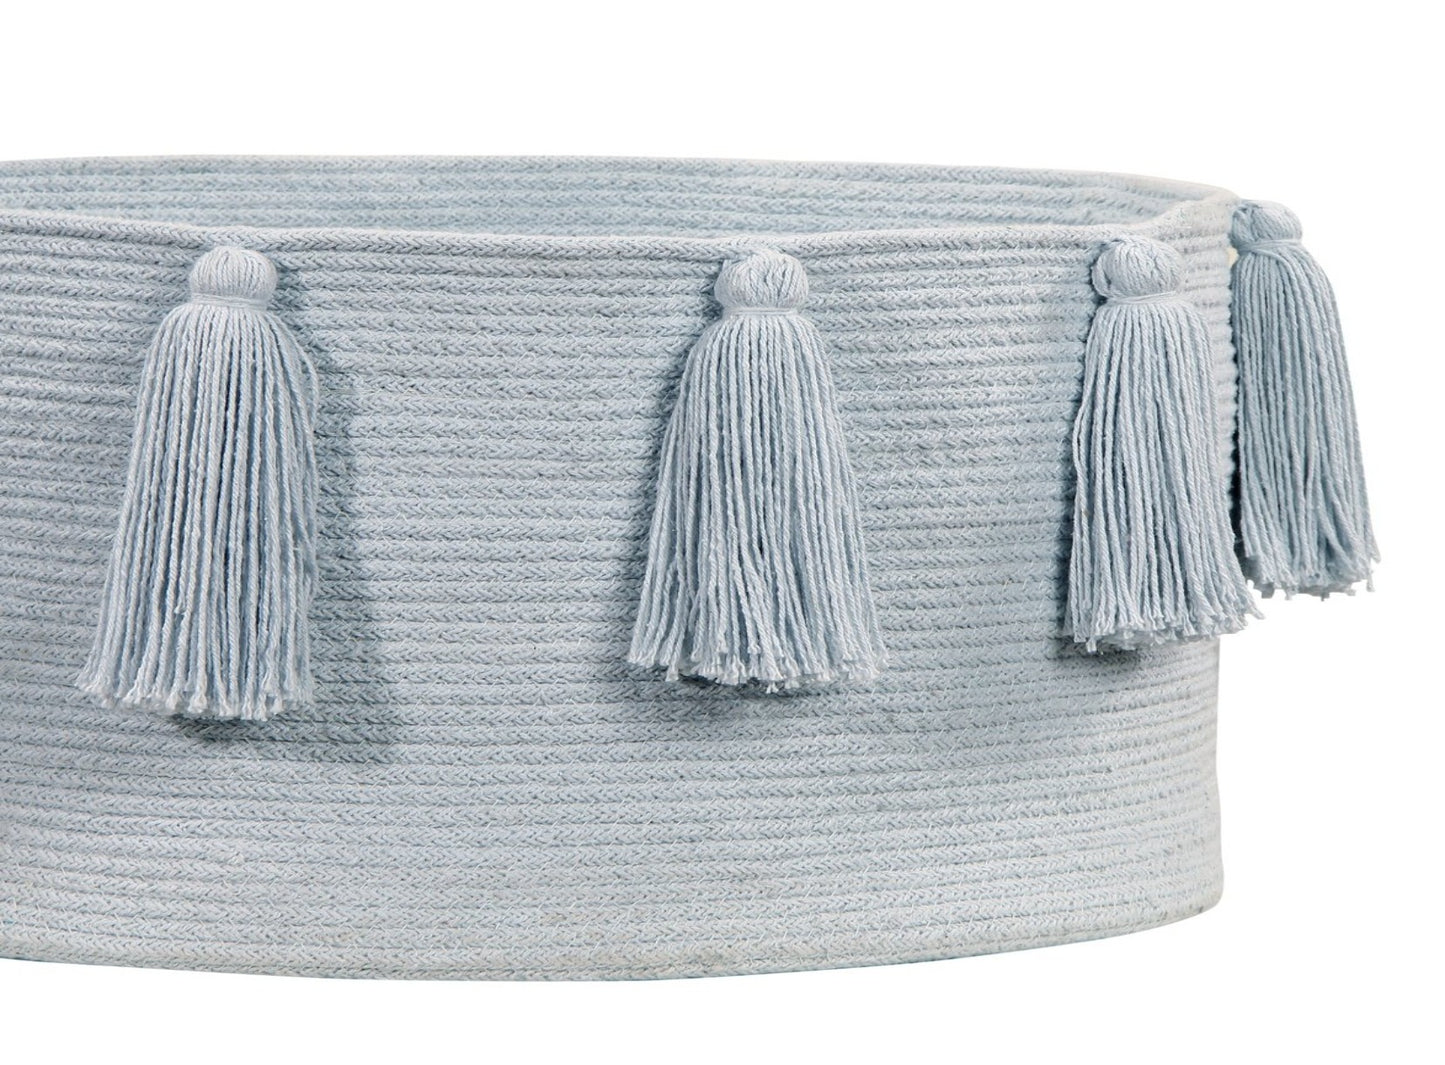 Soft Blue Color Tassels Basket Storage for nursery